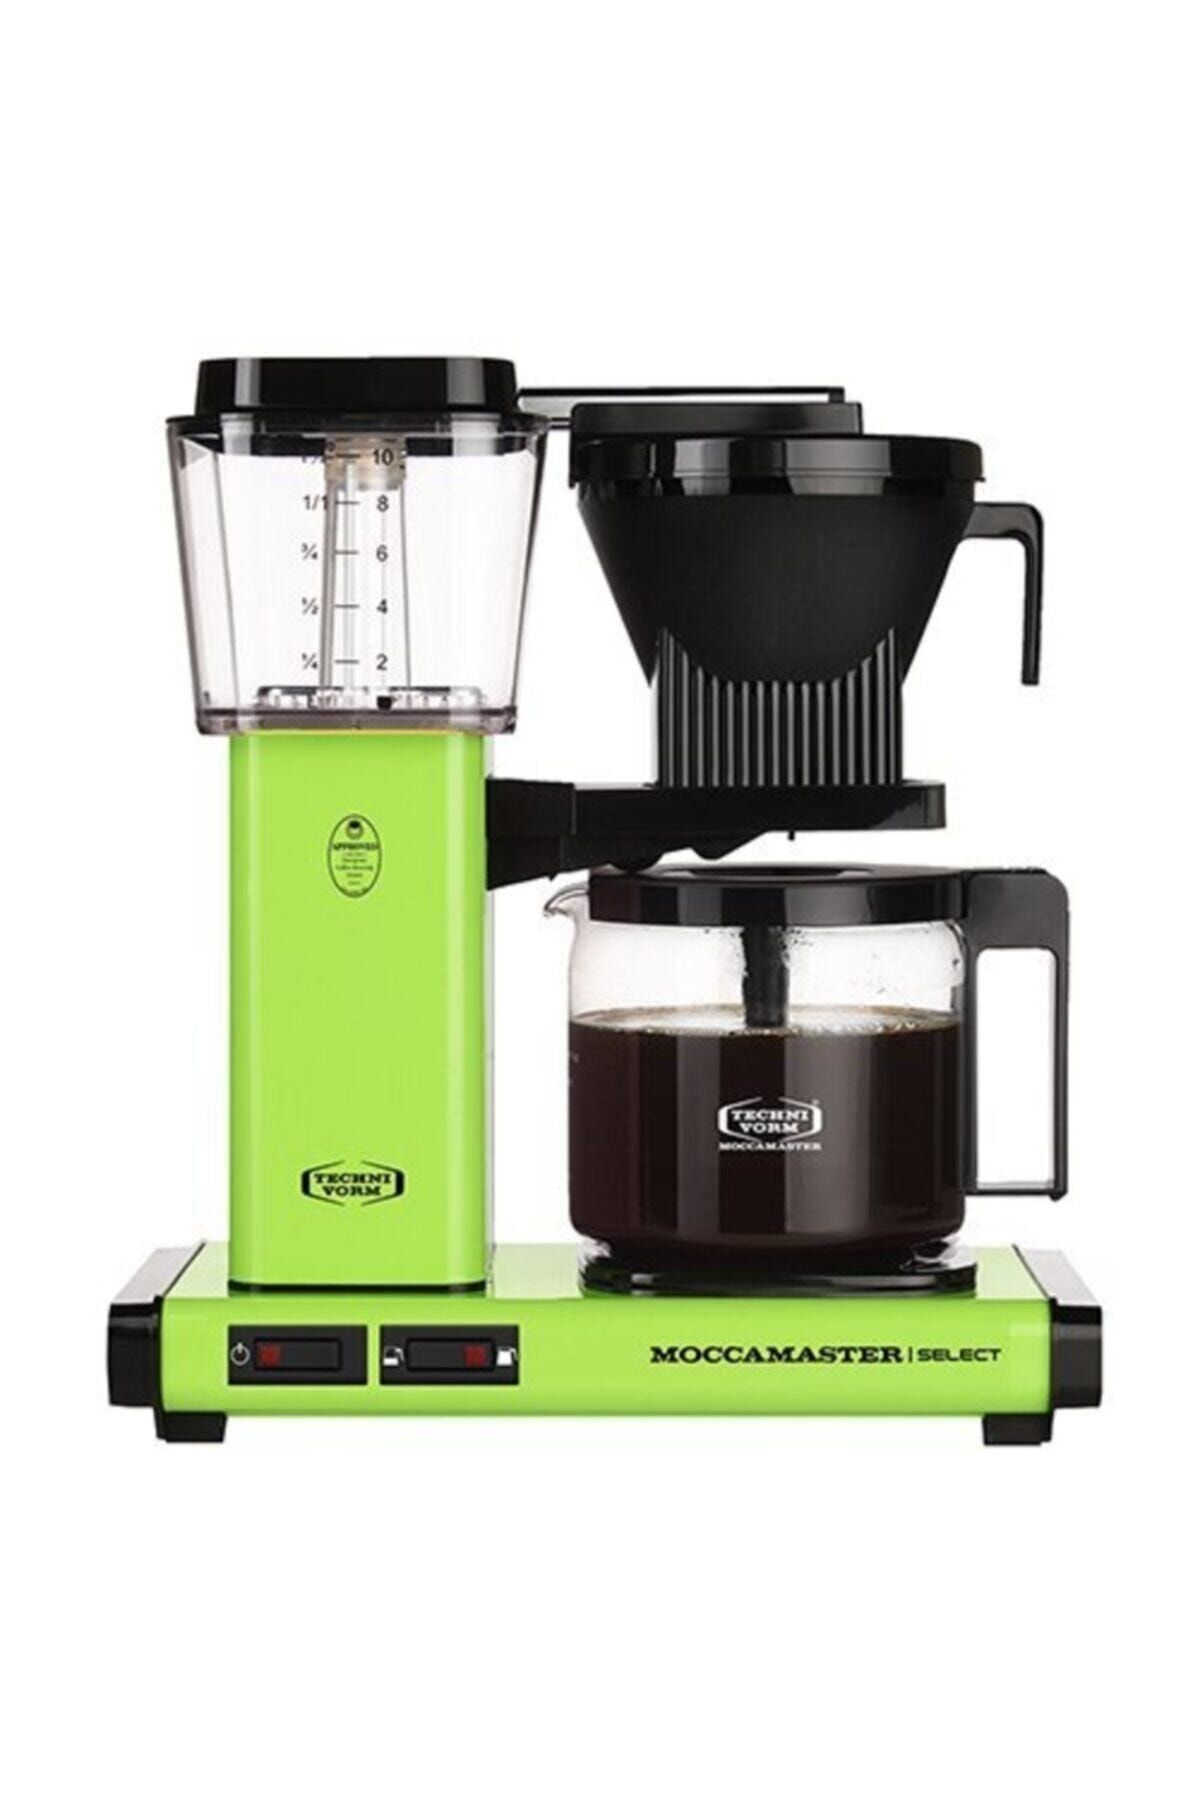 Moccamaster Kbg 741 Select Filtre Kahve Makinası (FRESH GREEN)